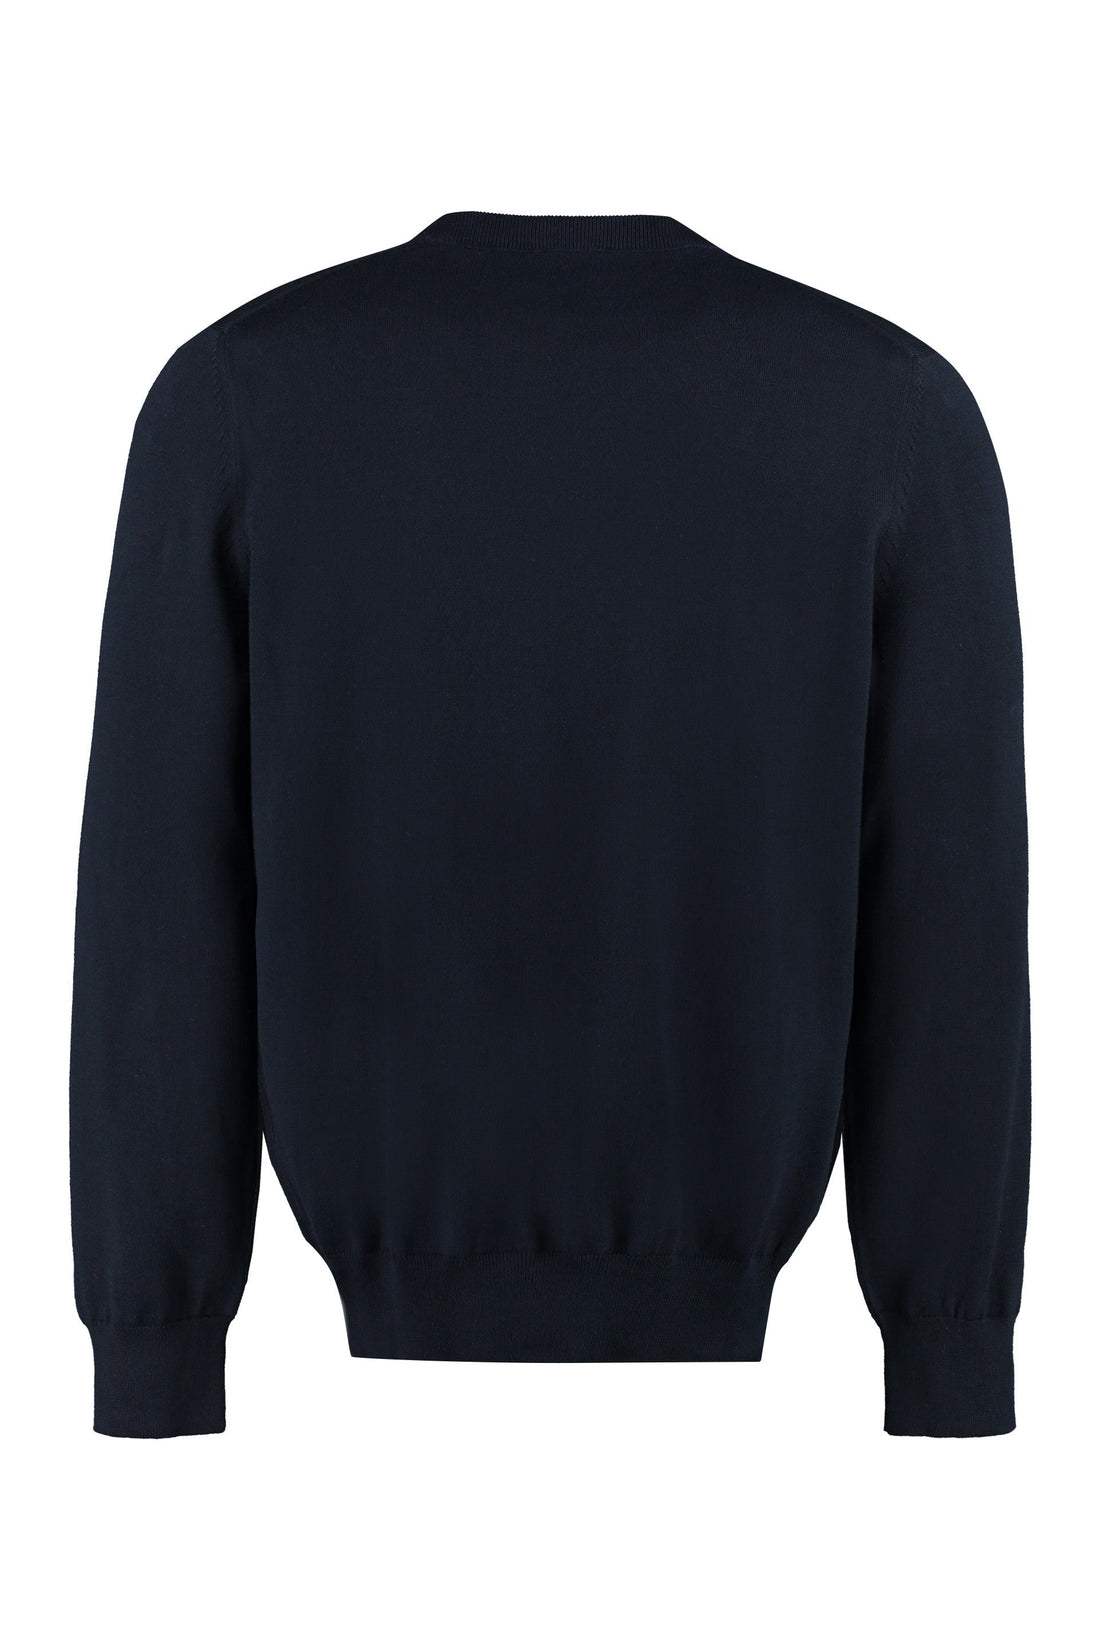 A.P.C.-OUTLET-SALE-Cotton crew-neck sweater-ARCHIVIST